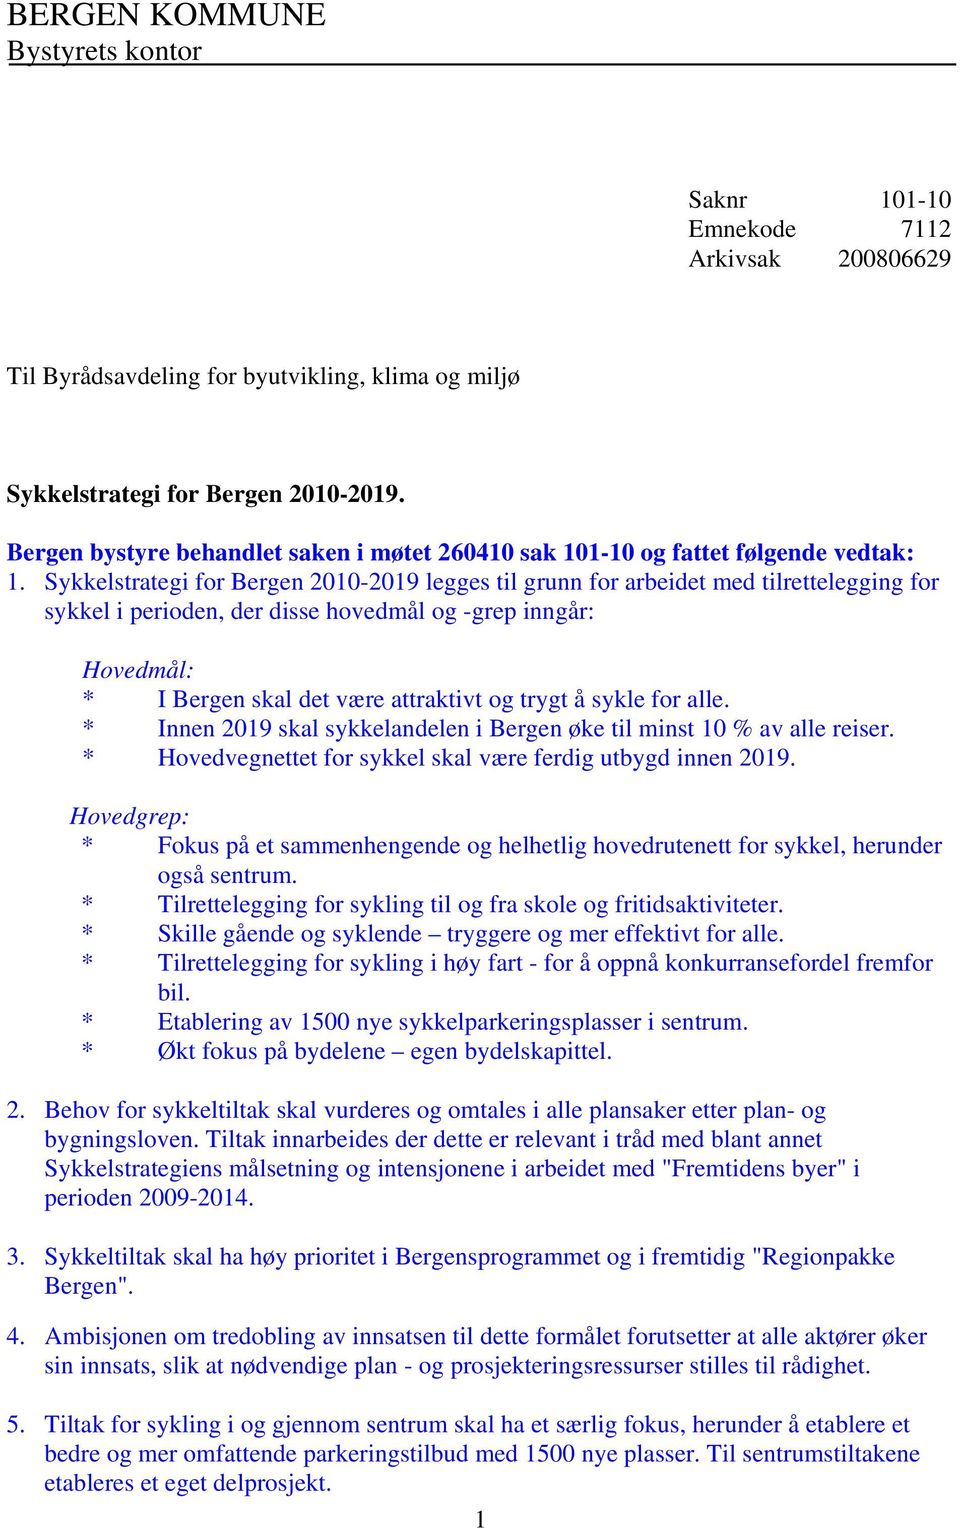 Sykkelstrategi for Bergen 2010-2019 legges til grunn for arbeidet med tilrettelegging for sykkel i perioden, der disse hovedmål og -grep inngår: Hovedmål: * I Bergen skal det være attraktivt og trygt